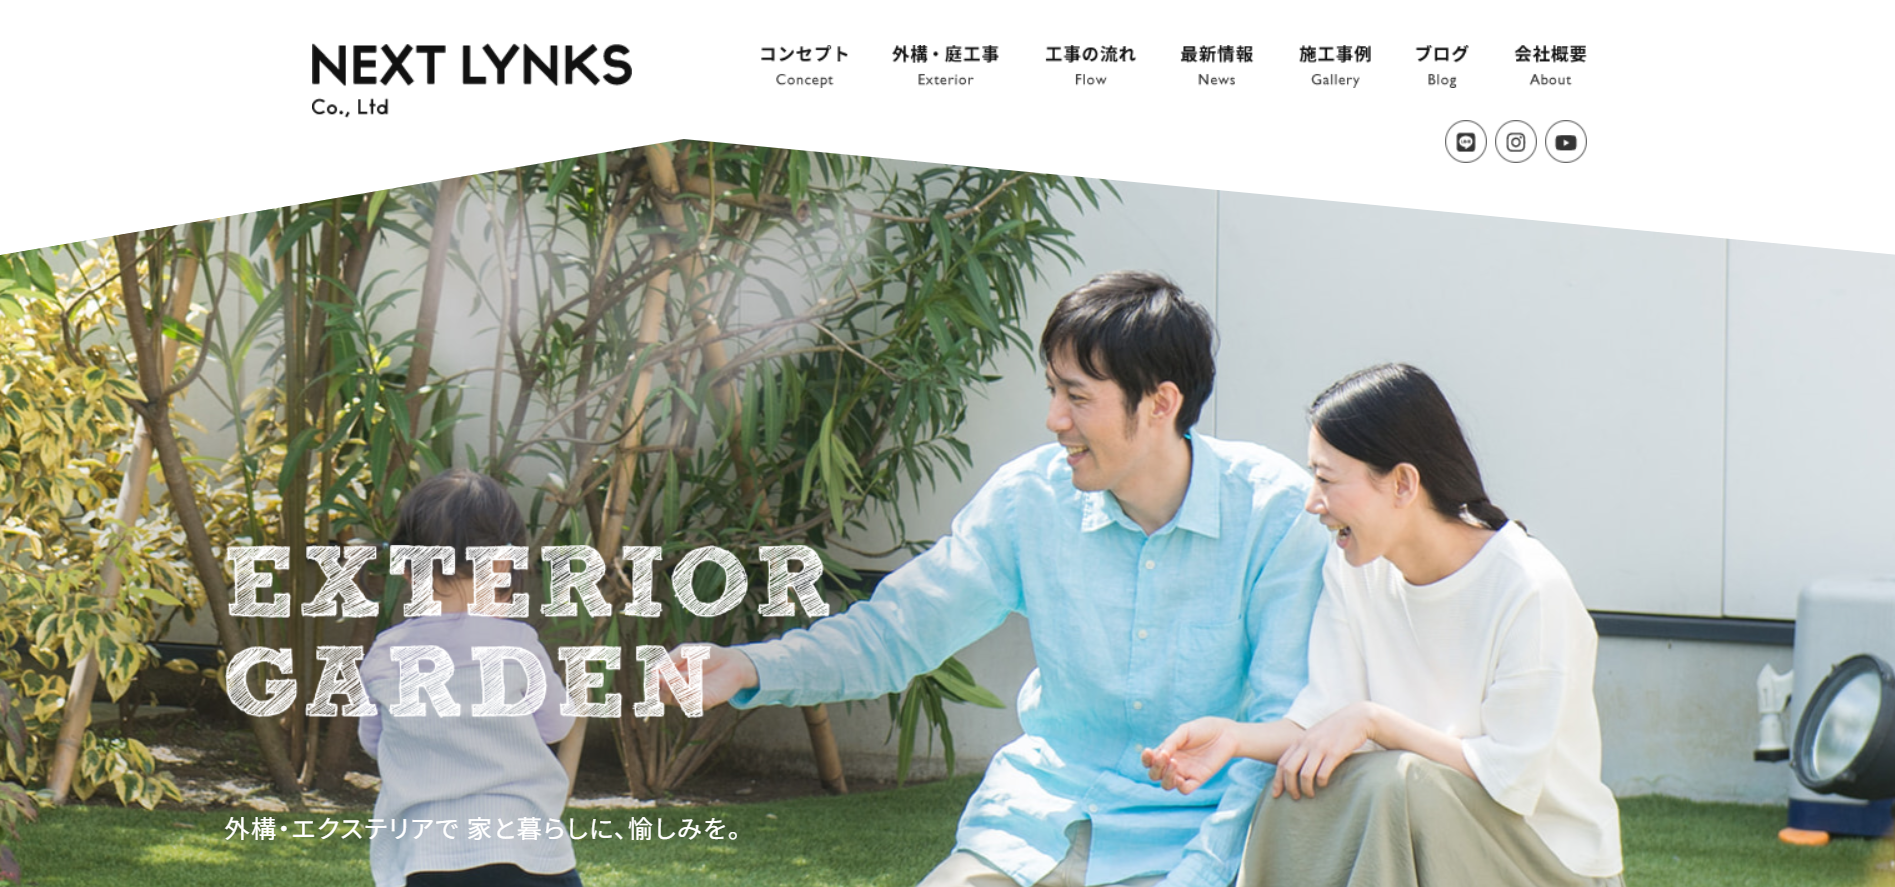 久留米市で評判のおすすめ外構業者ランキング 第10位 NEXTLYNKS株式会社